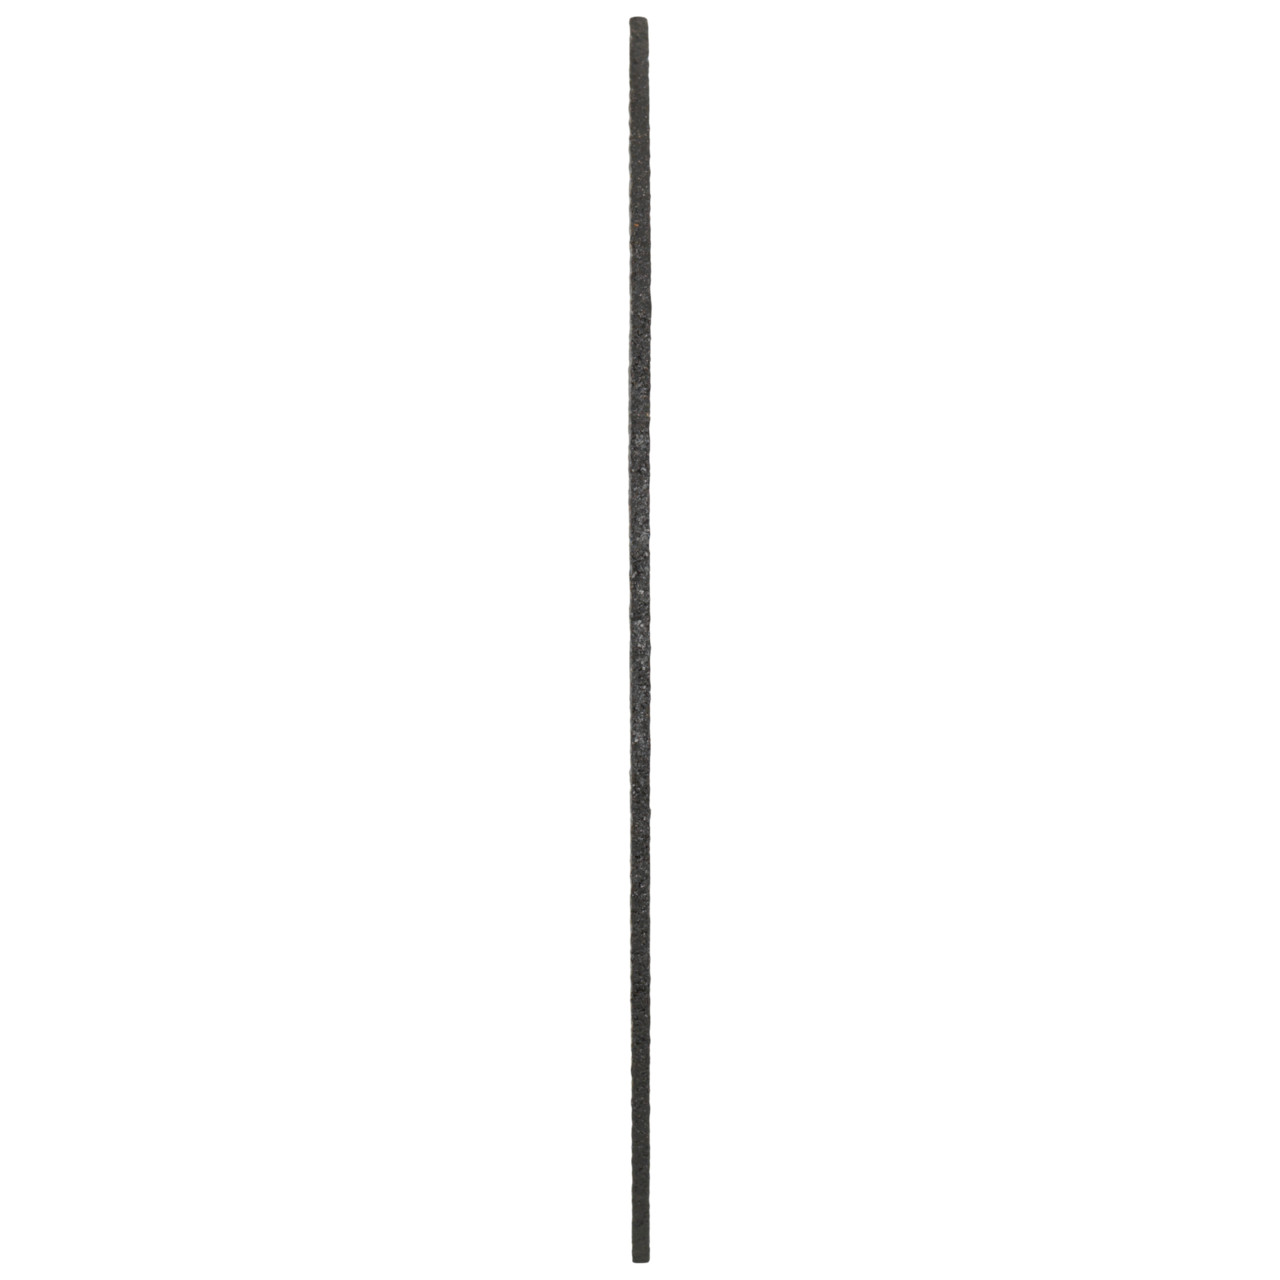 Tyrolit Snijschijven DxDxH 115x2,5x22,23 2in1 voor staal en roestvrij staal, vorm: 41 - rechte uitvoering, Art. 222997